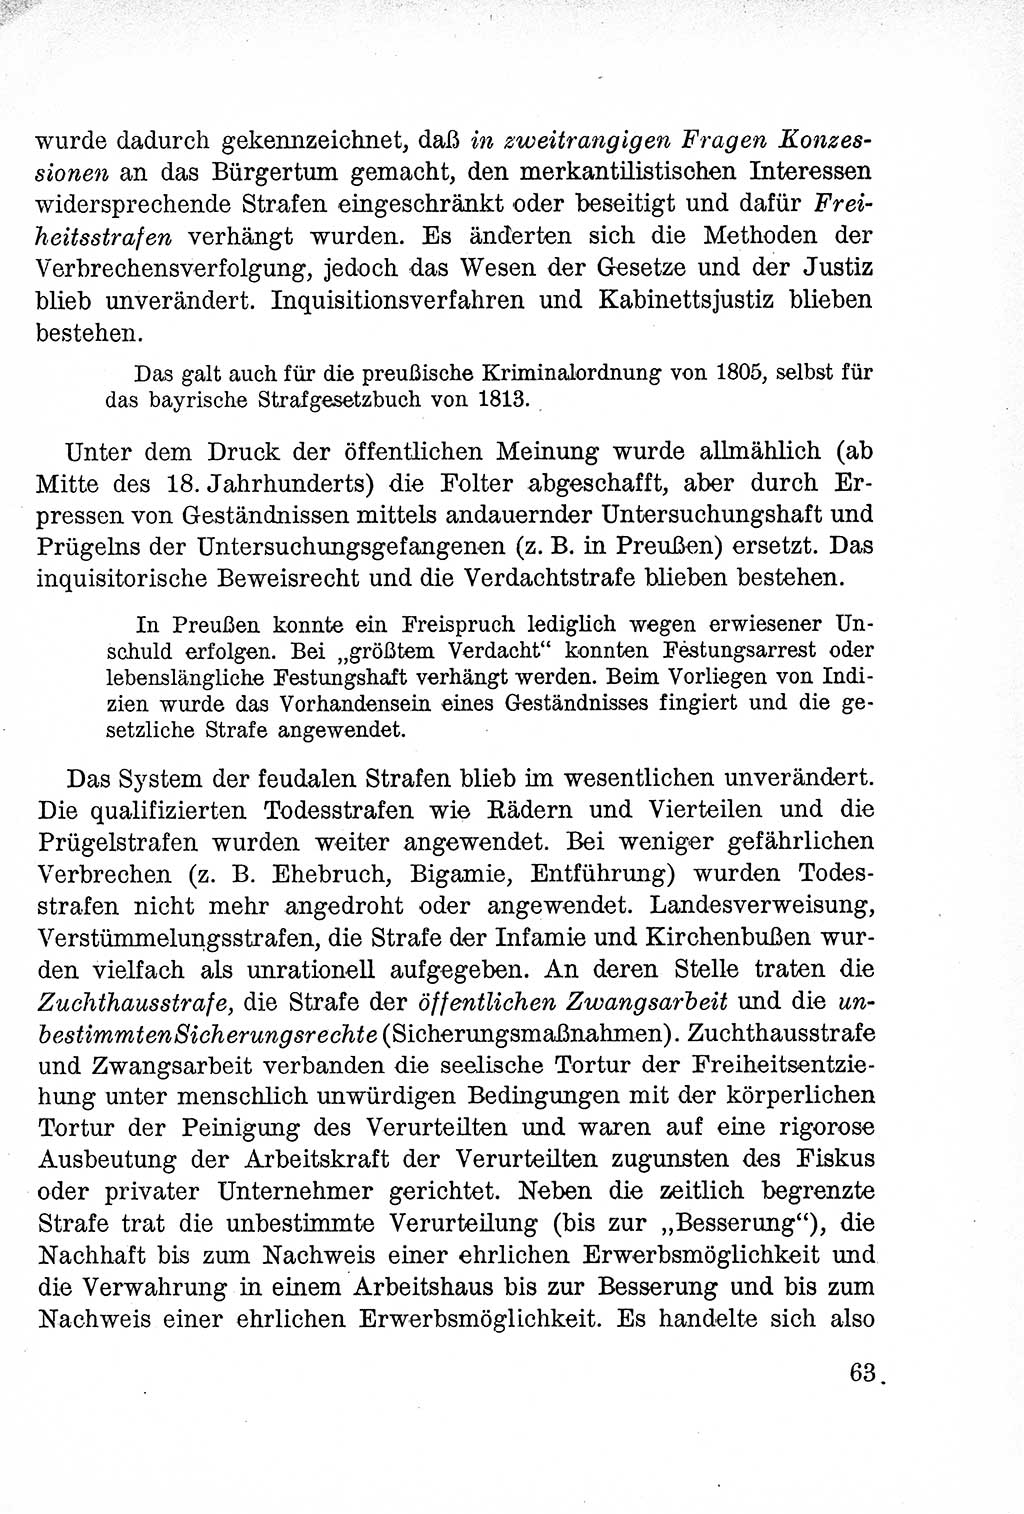 Lehrbuch des Strafrechts der Deutschen Demokratischen Republik (DDR), Allgemeiner Teil 1957, Seite 63 (Lb. Strafr. DDR AT 1957, S. 63)